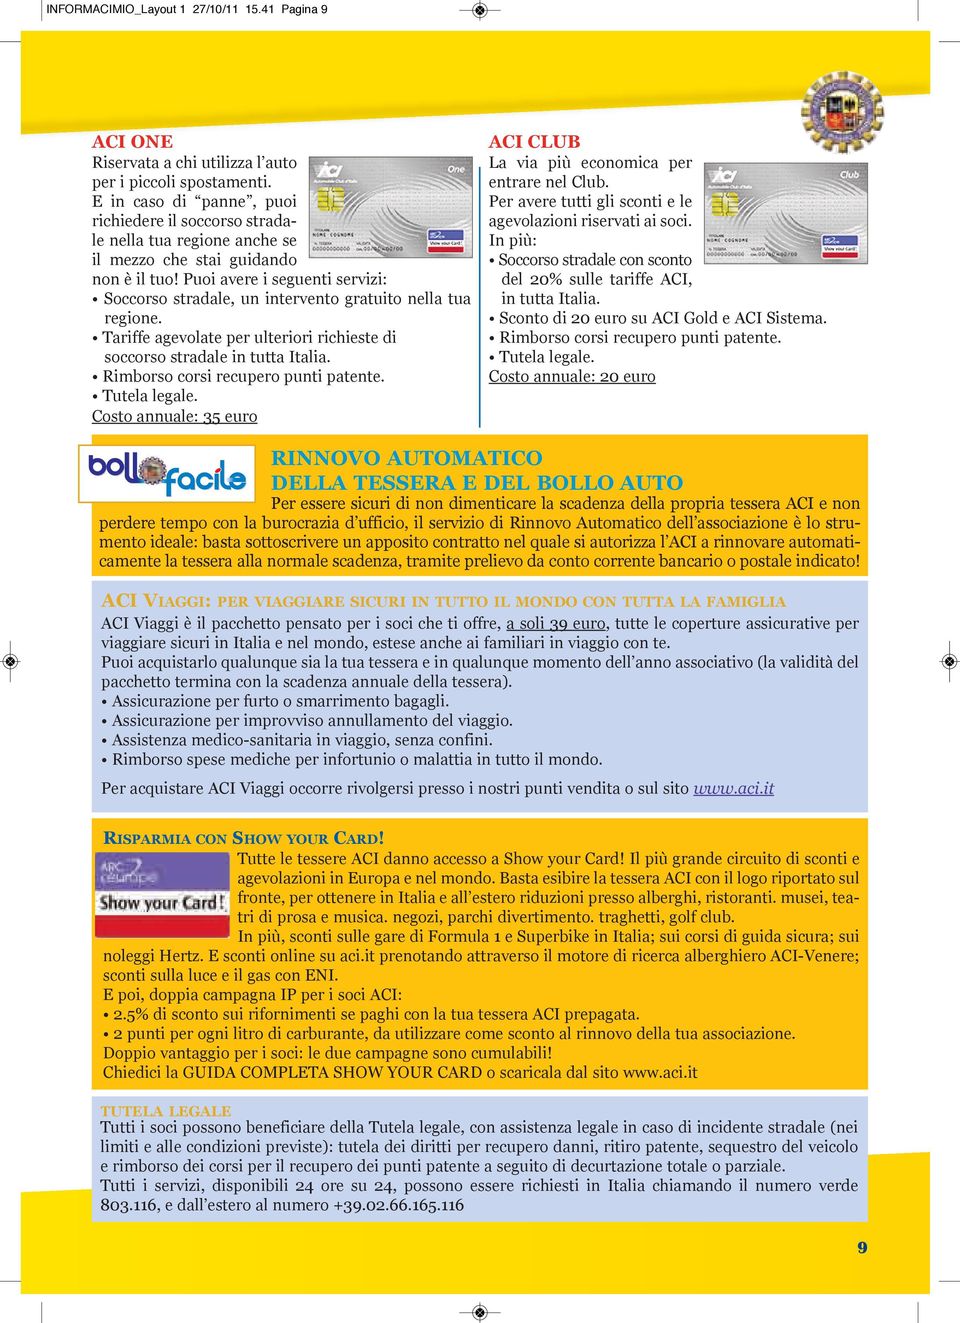 Puoi avere i seguenti servizi: Soccorso stradale, un intervento gratuito nella tua regione. Tariffe agevolate per ulteriori richieste di soccorso stradale in tutta Italia.